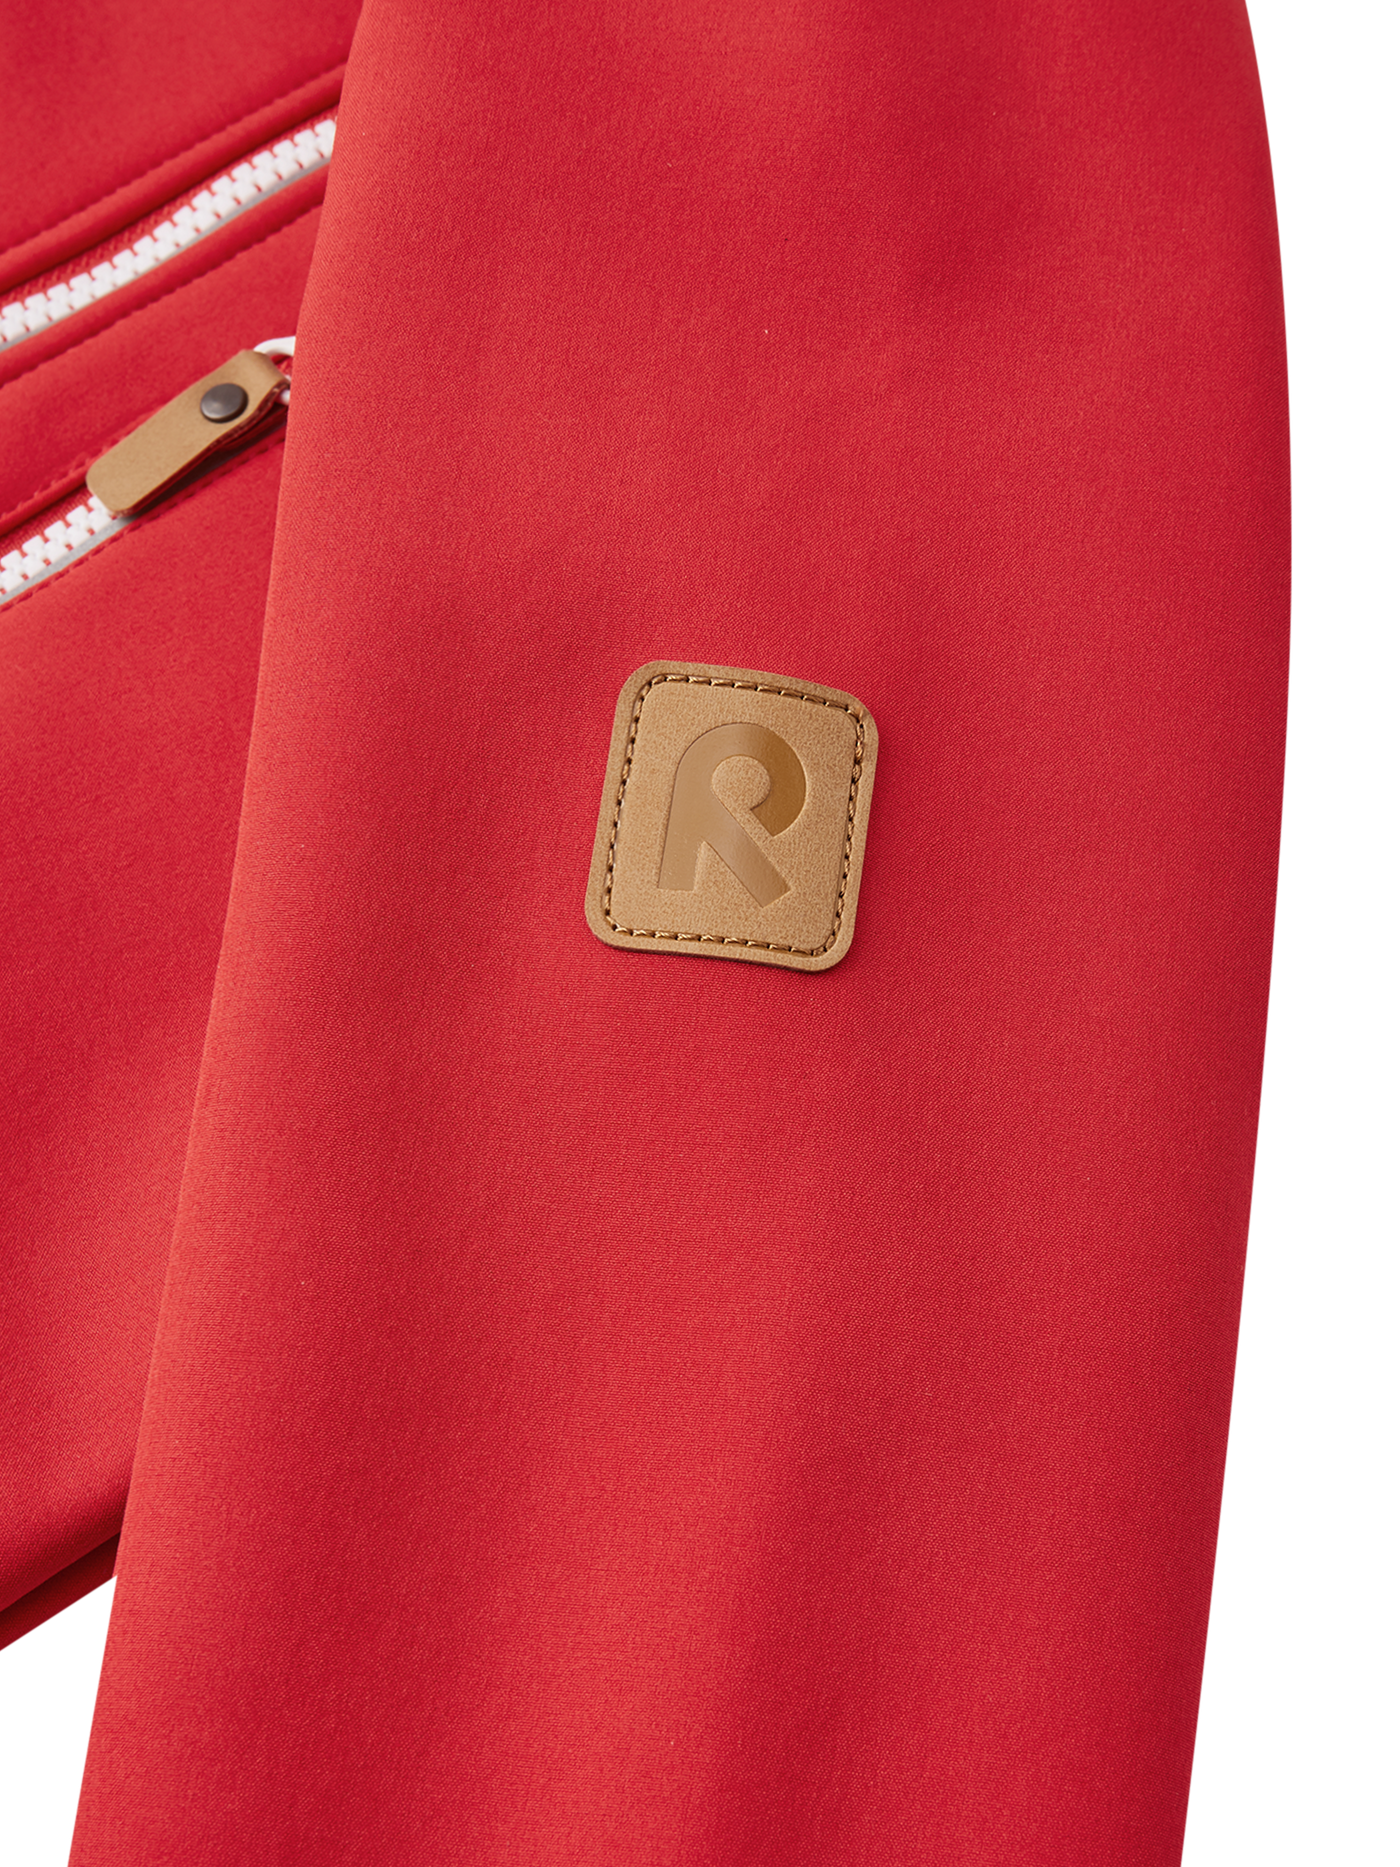 Reima Vantti lasten softshell takki värissä Tomato red lähikuva hihan R-logosta